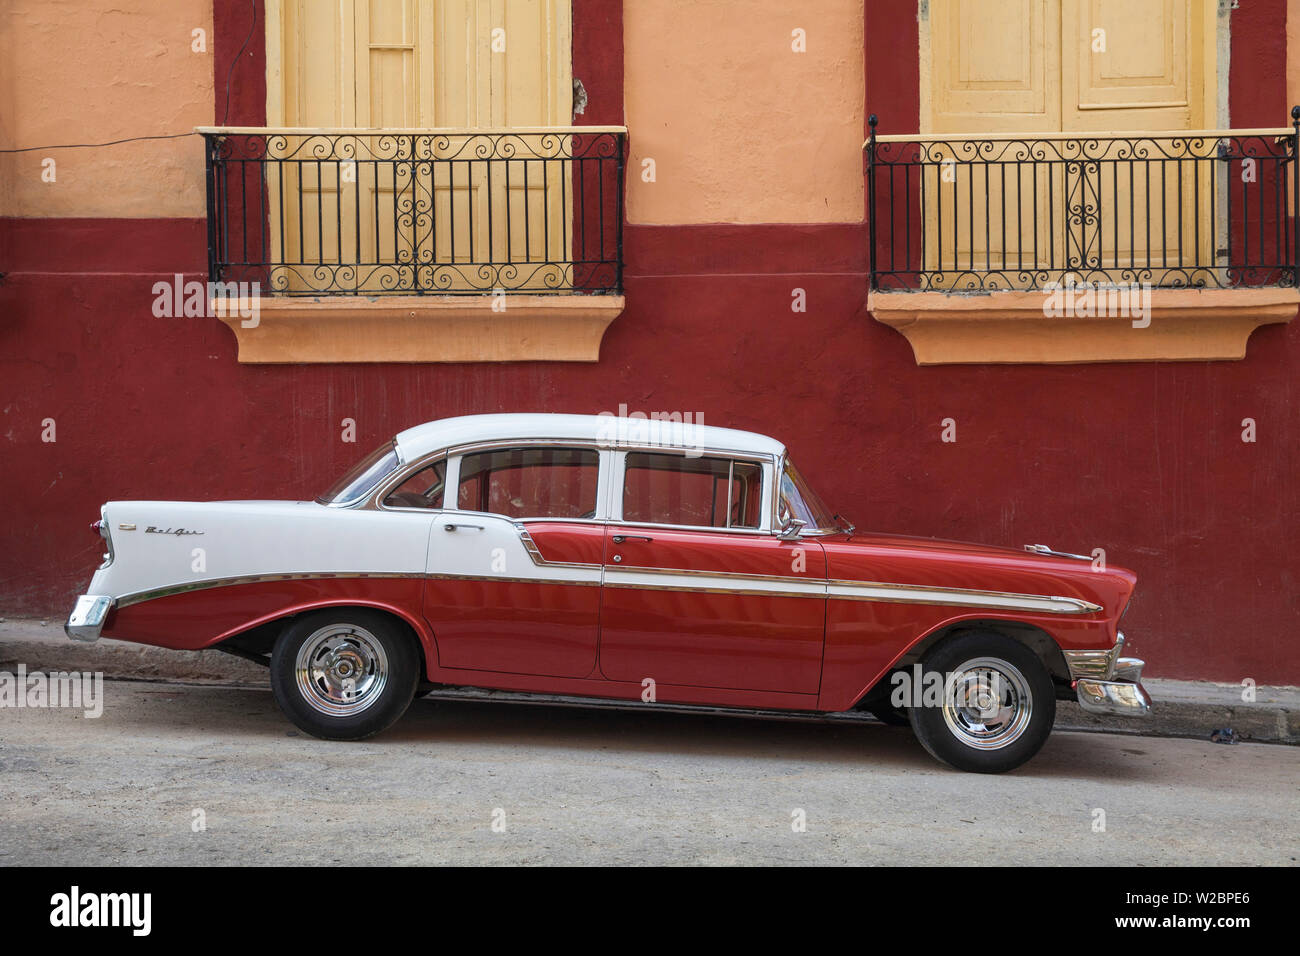 Cuba, Santiago de Cuba Province, Santiago de Cuba, Historical Center, Classic American car Stock Photo